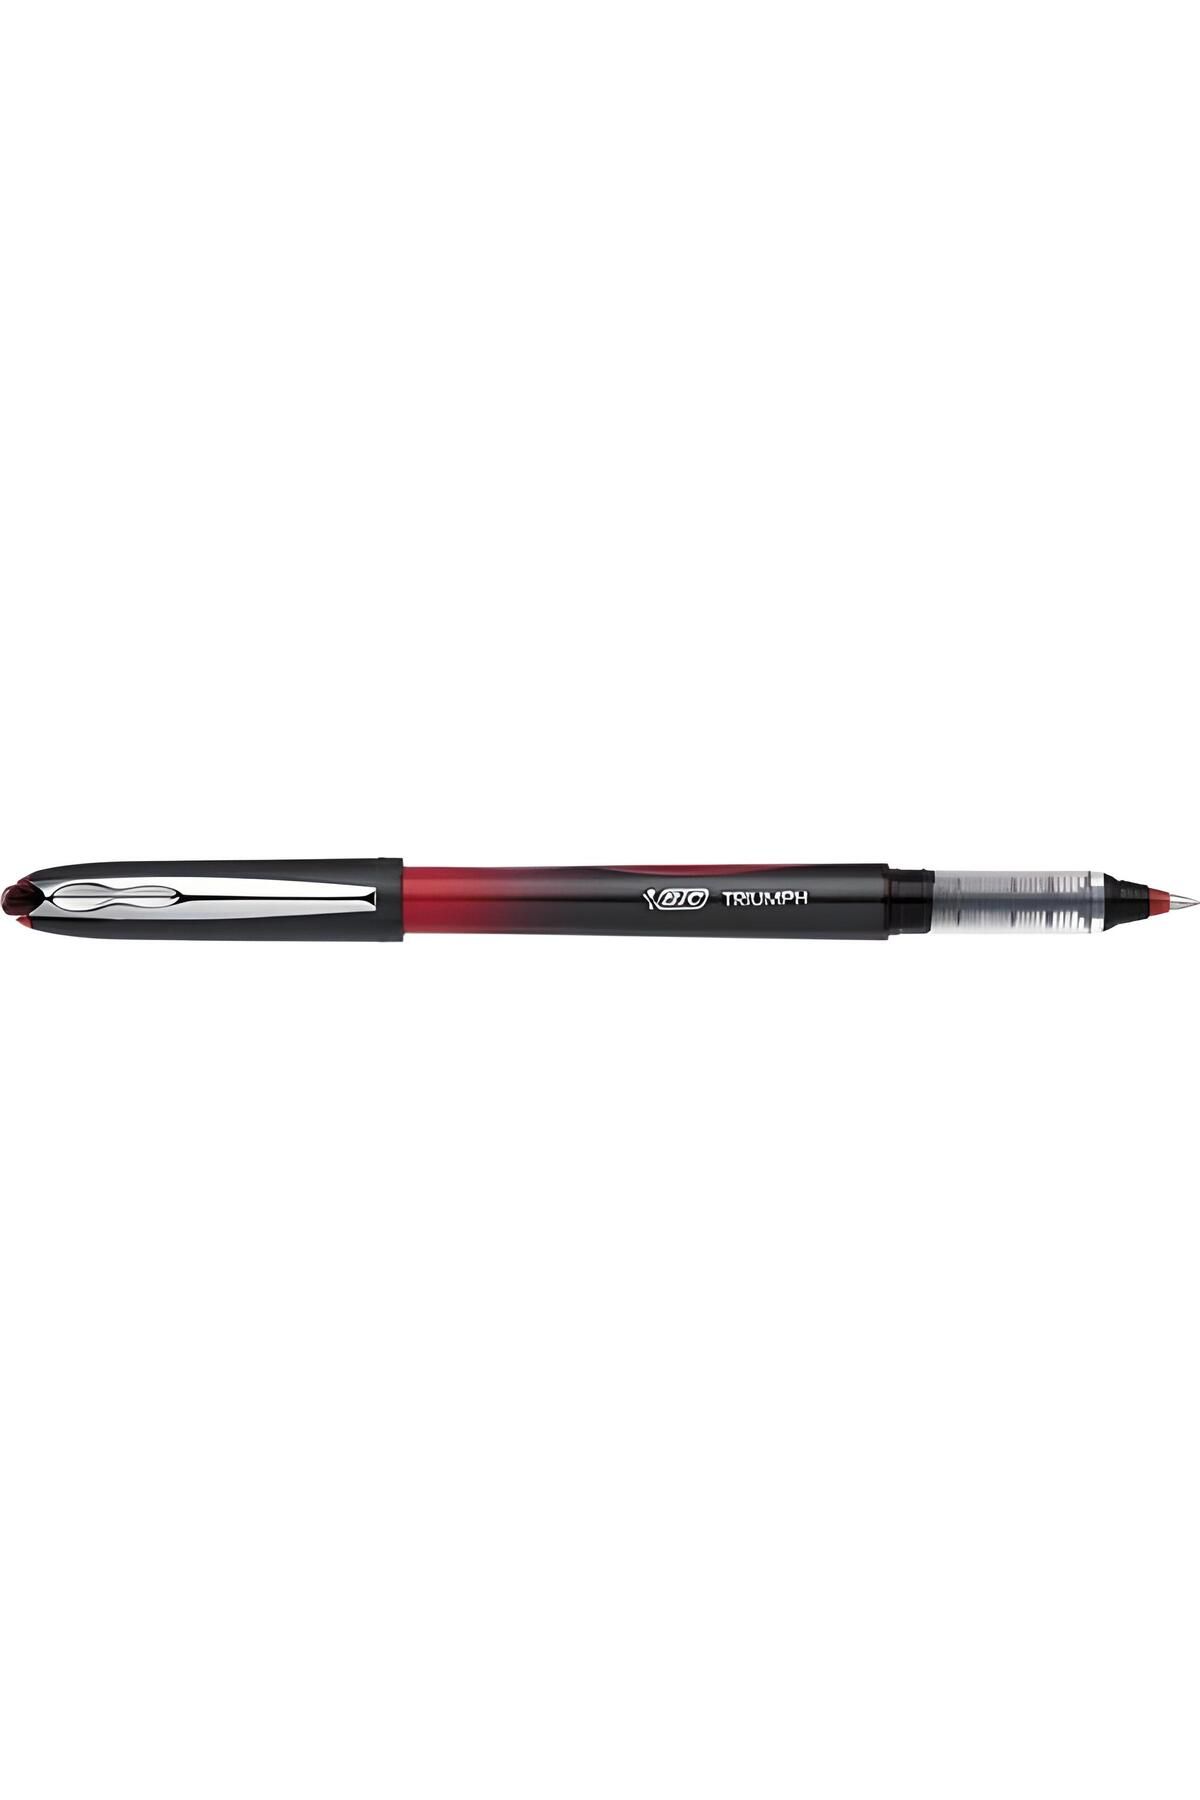 Bic trıumph 537 kırmızı pilot kalem 0.7 mm (1 ADET)